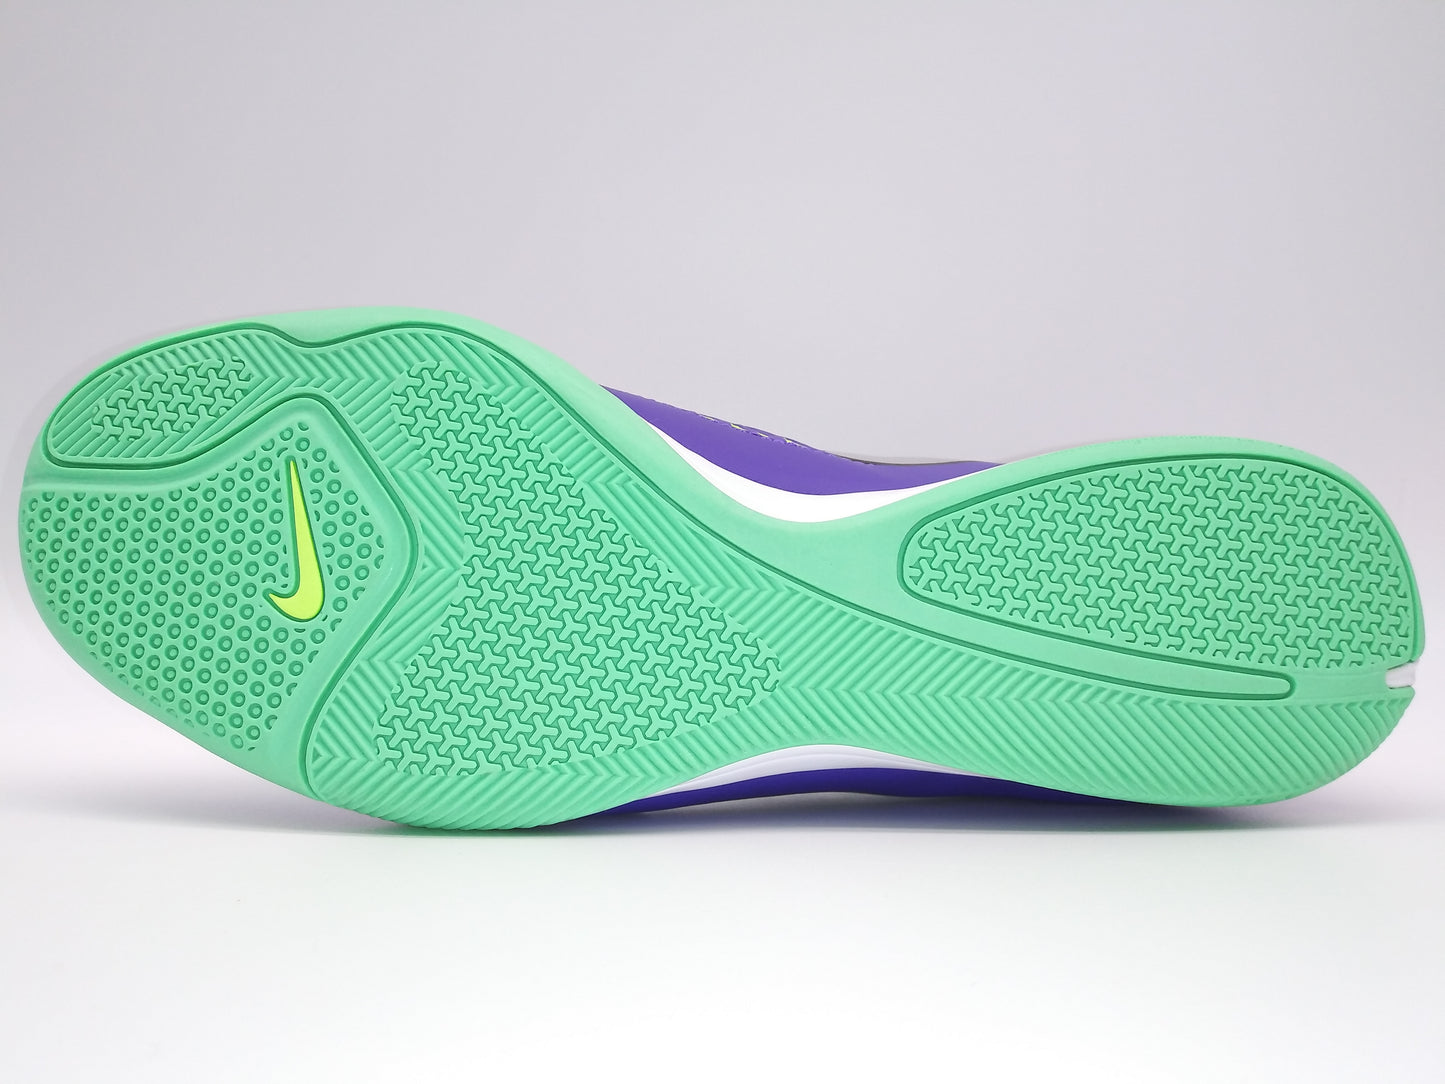 Nike Magista Onda IC Purple Yellow